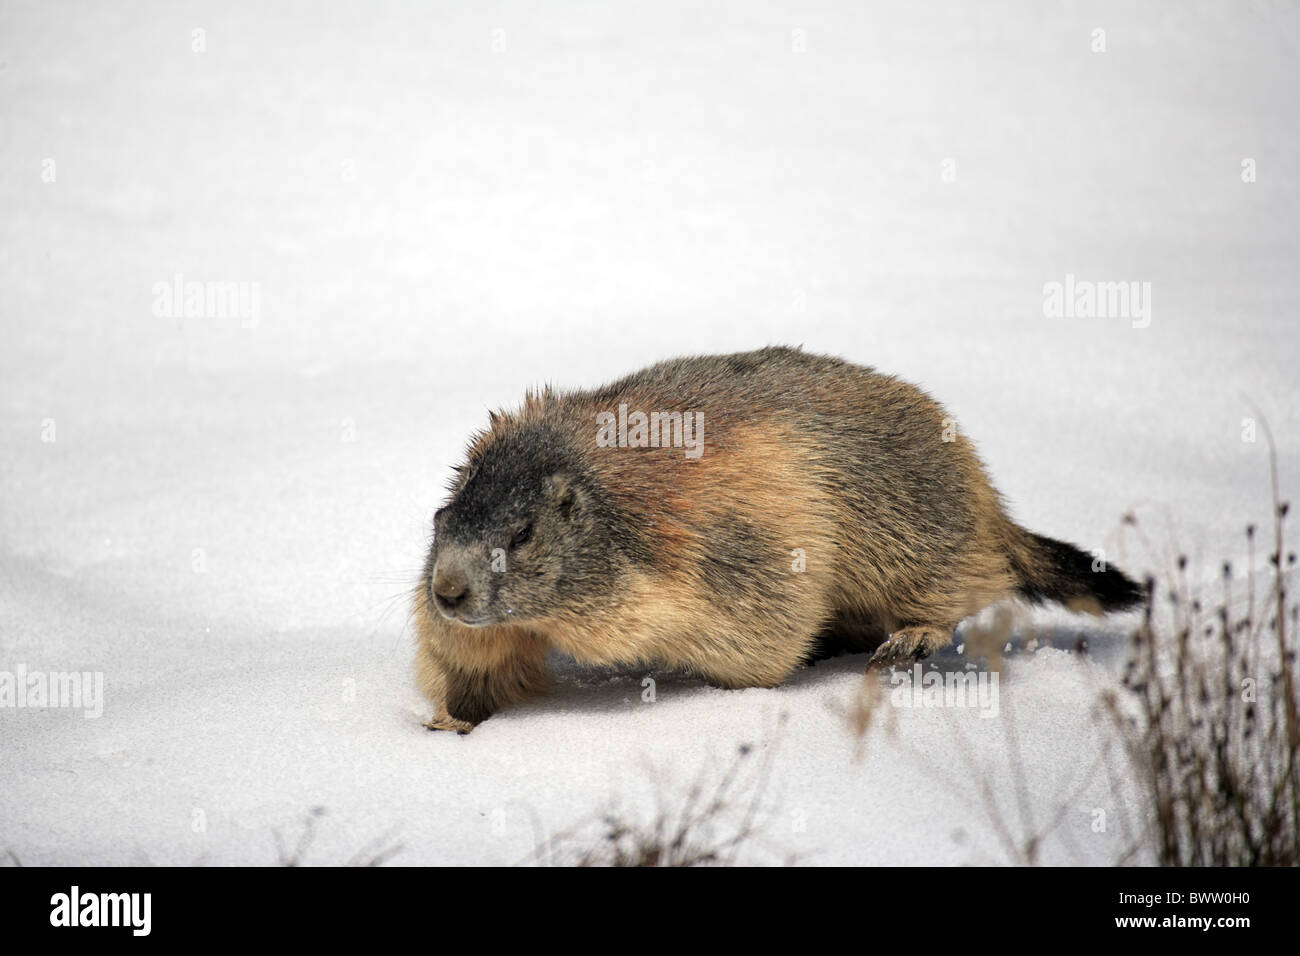 laufend - walking - running marmot marmots 'ground squirrel' 'ground squirrels' rodent rodents herbivore herbivores mammal Stock Photo